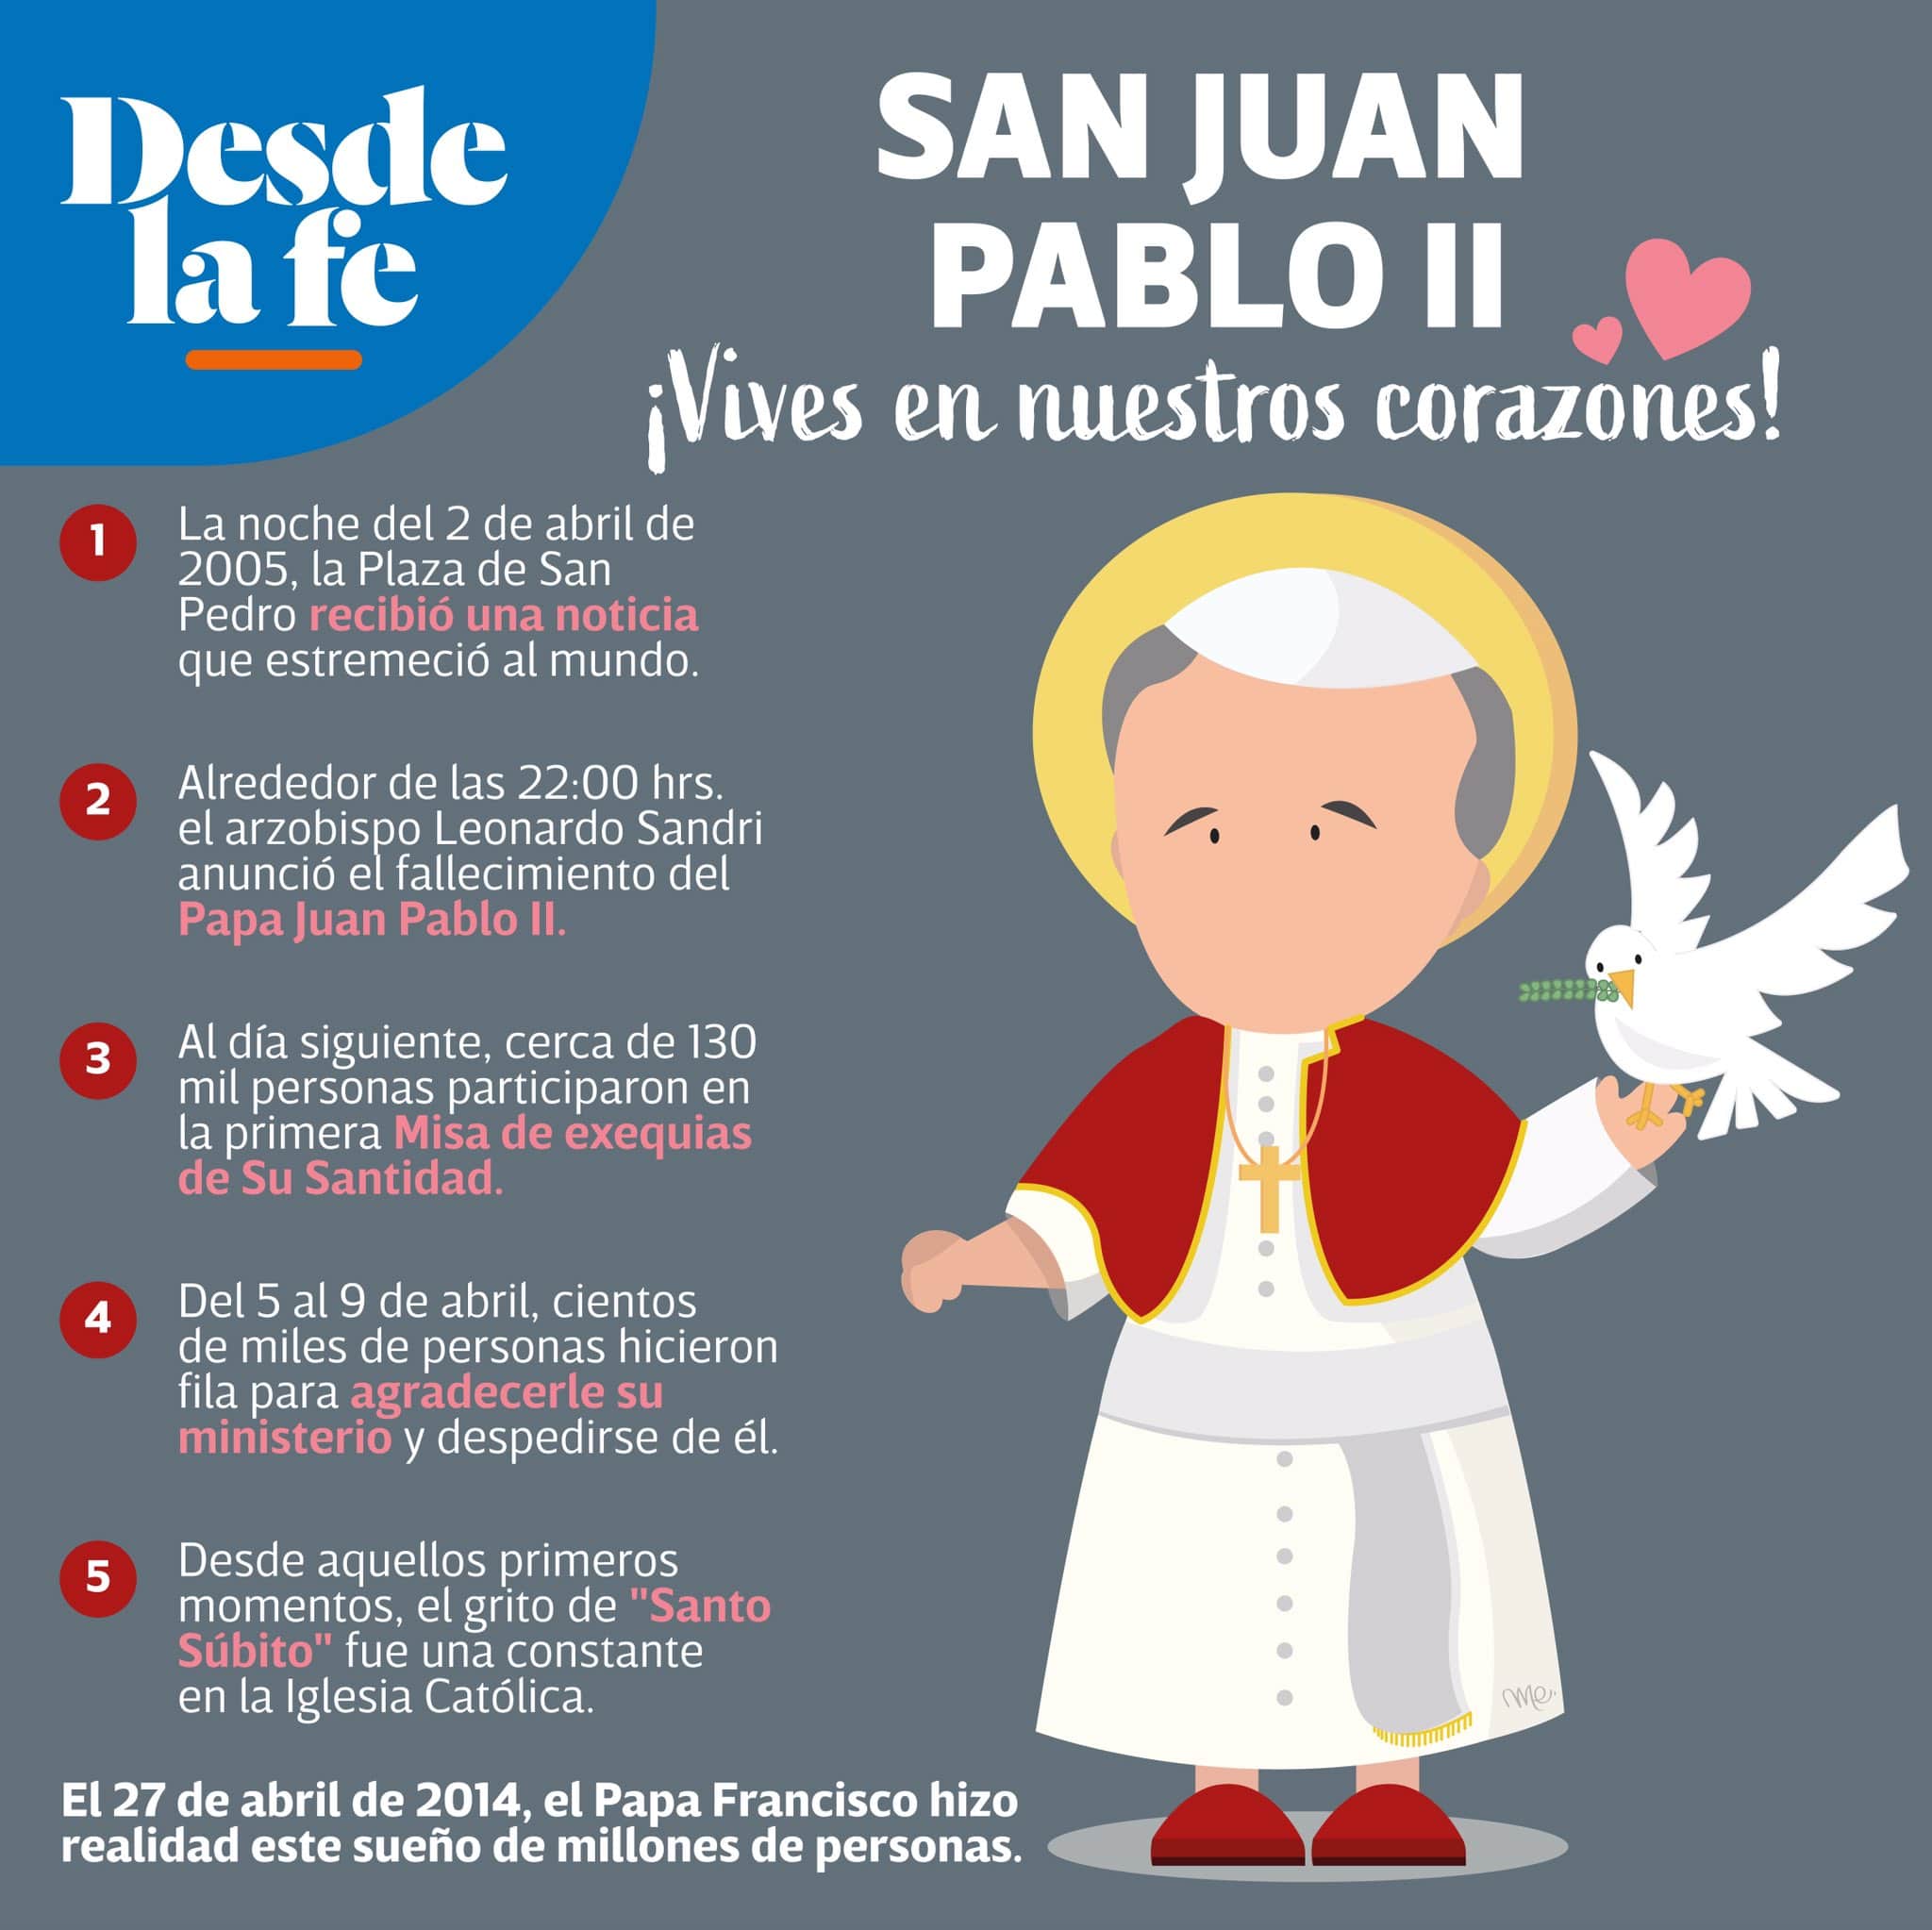 San Juan Pablo II en nuestros corazones.